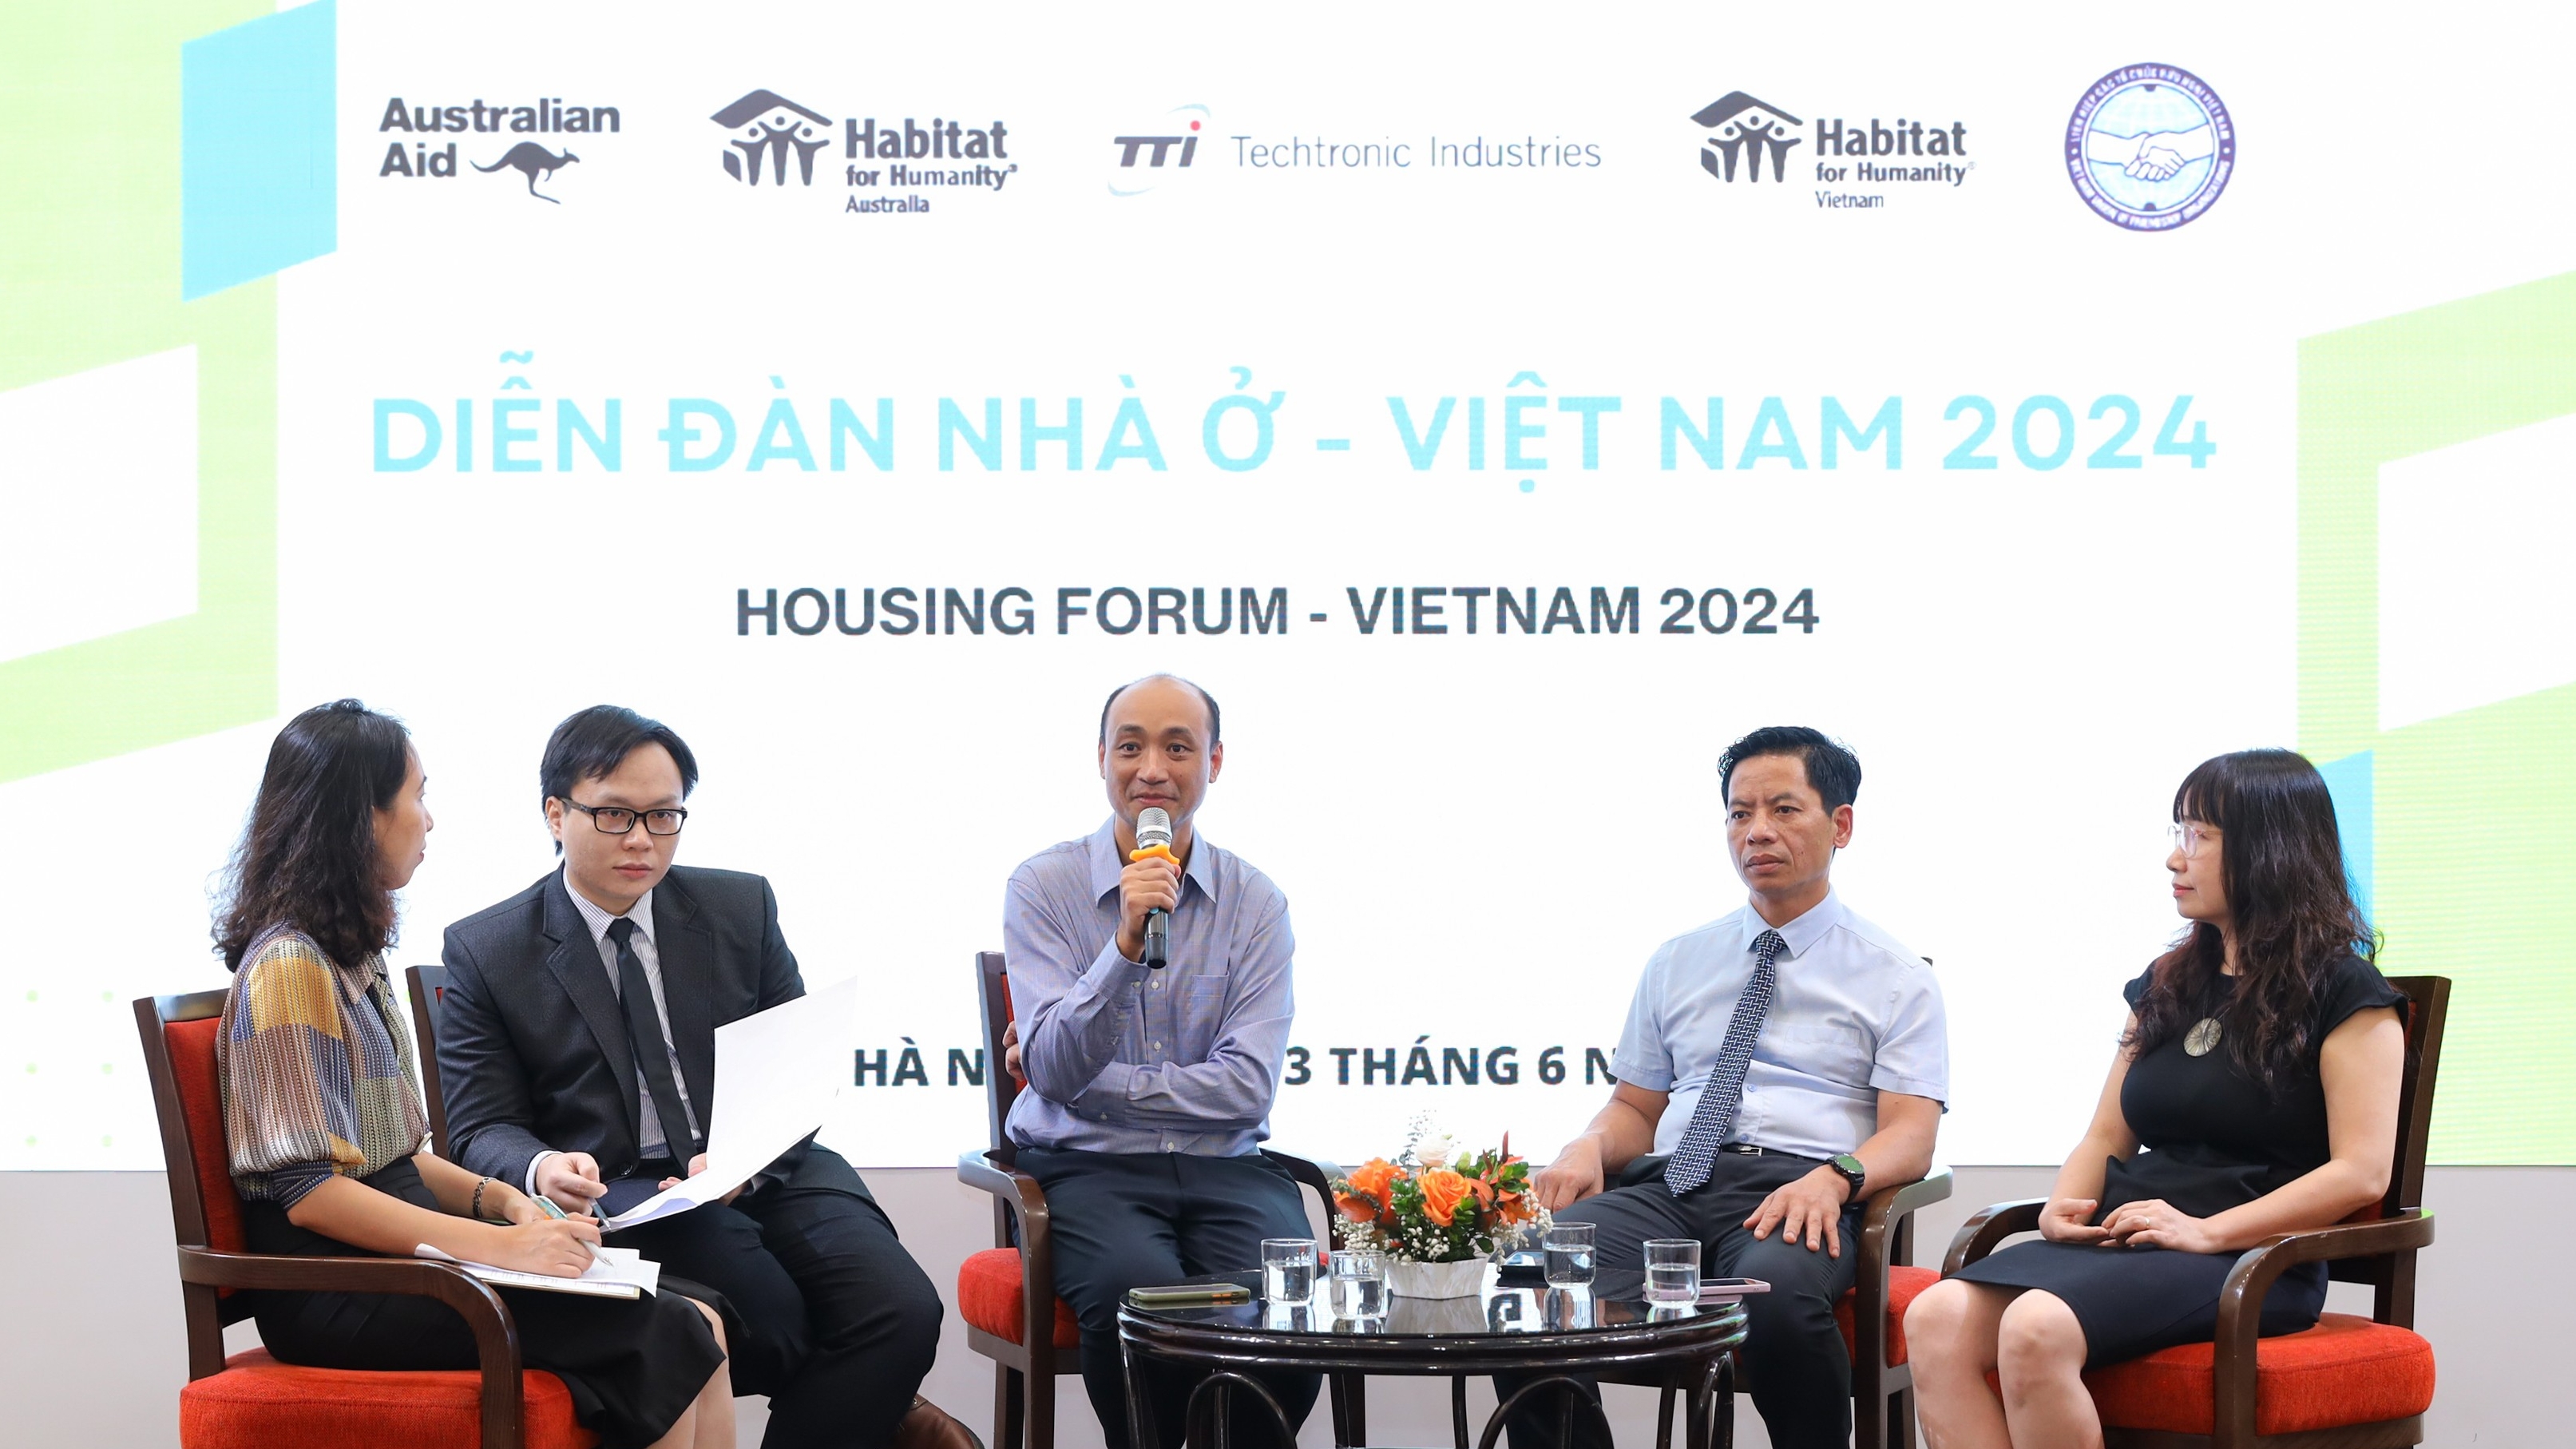 5 решений Habitat Vietnam, помогающих людям получить безопасное и доступное жилье